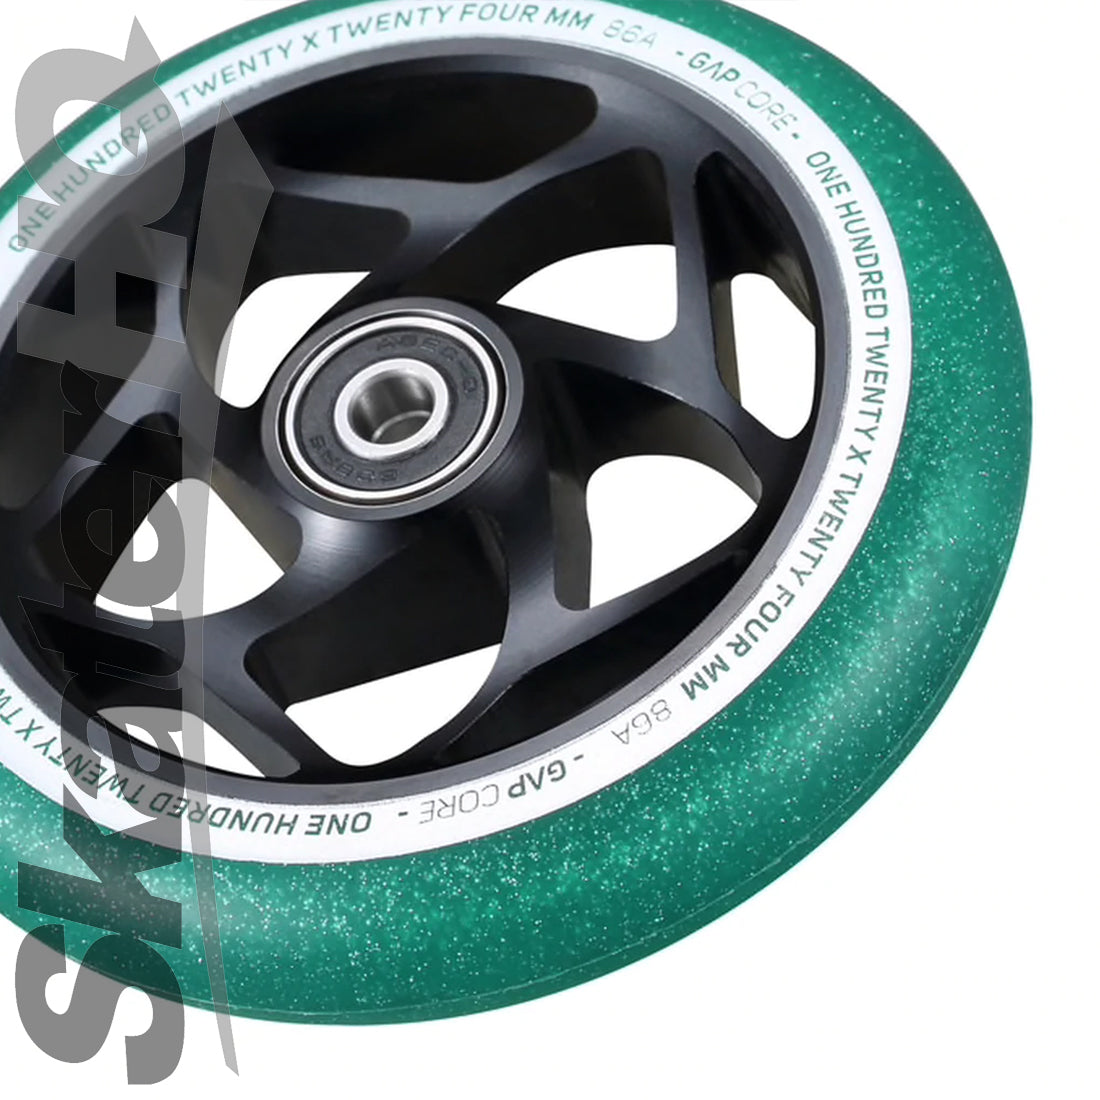 Envy Gap Core 120mm Wheel - Jade Scooter Wheels